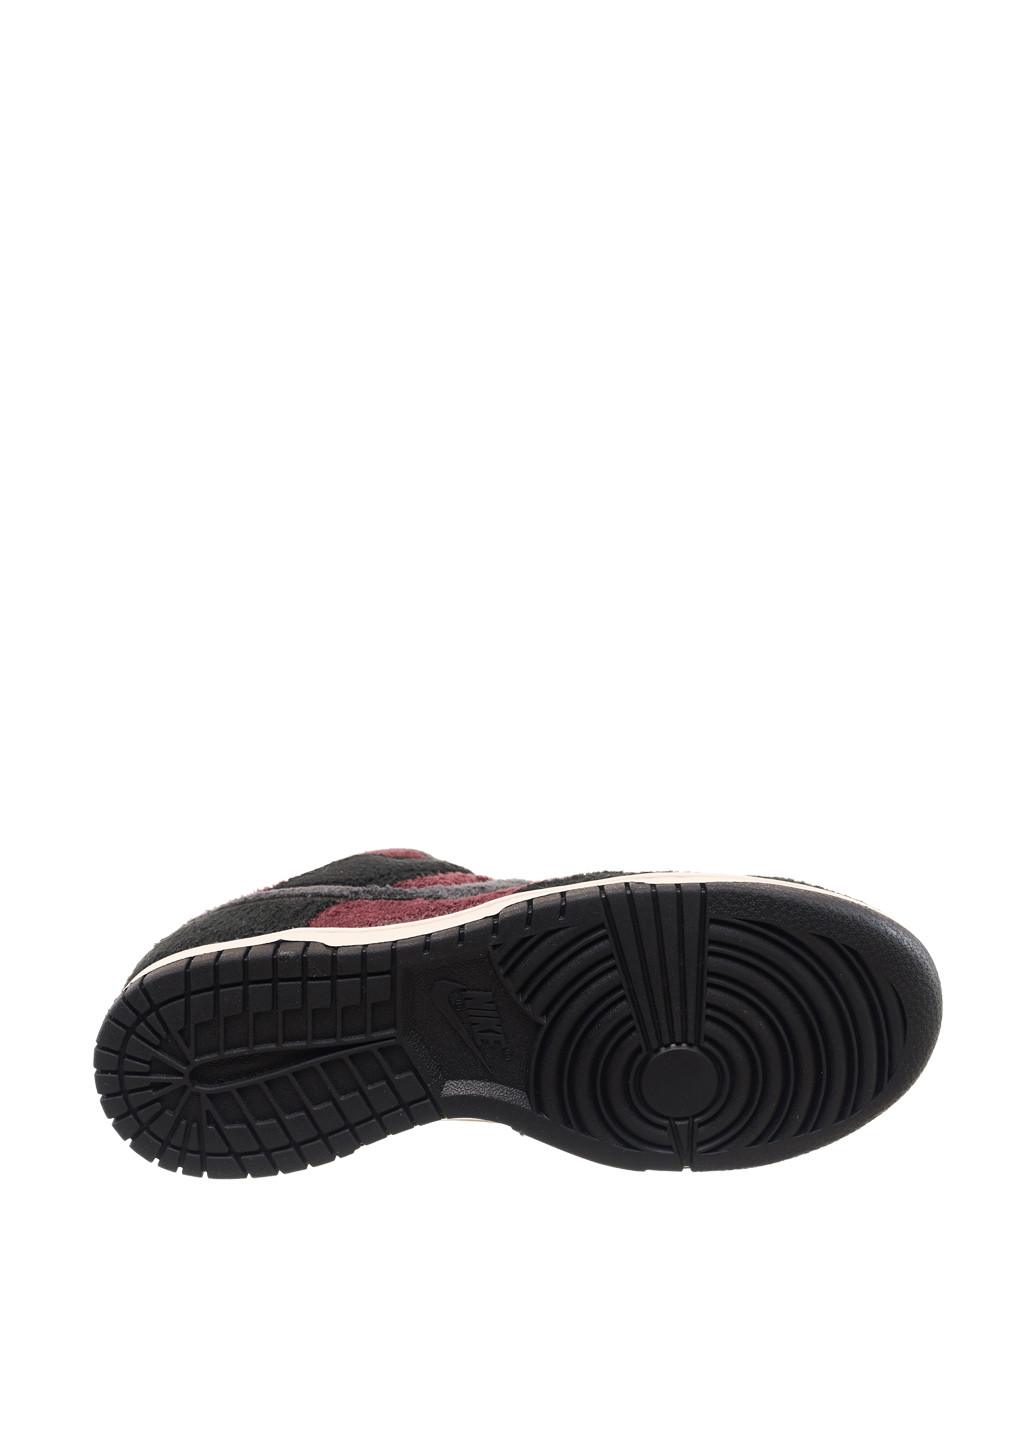 Темно-червоні осінні кросівки dq7579-600_2024 Nike Dunk Low SE